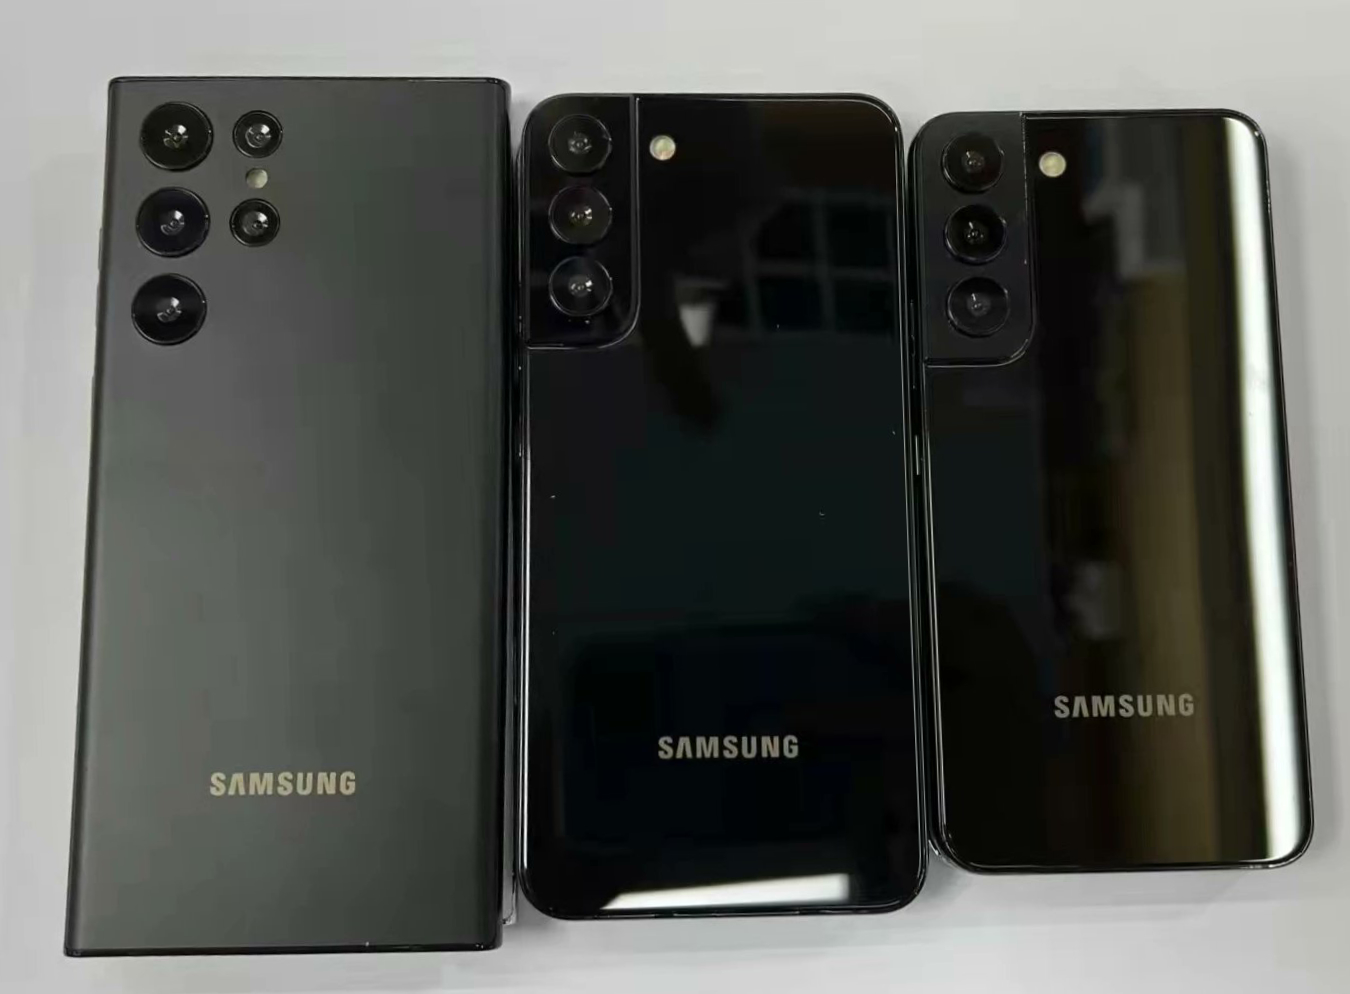 Samsung Galaxy S22 Plus: Với màn hình rộng và độ phân giải tuyệt vời, Samsung Galaxy S22 Plus sẽ mang đến cho bạn trải nghiệm xem phim, chơi game và lướt web hoàn hảo nhất. Hãy click vào hình ảnh để khám phá thêm về sản phẩm.